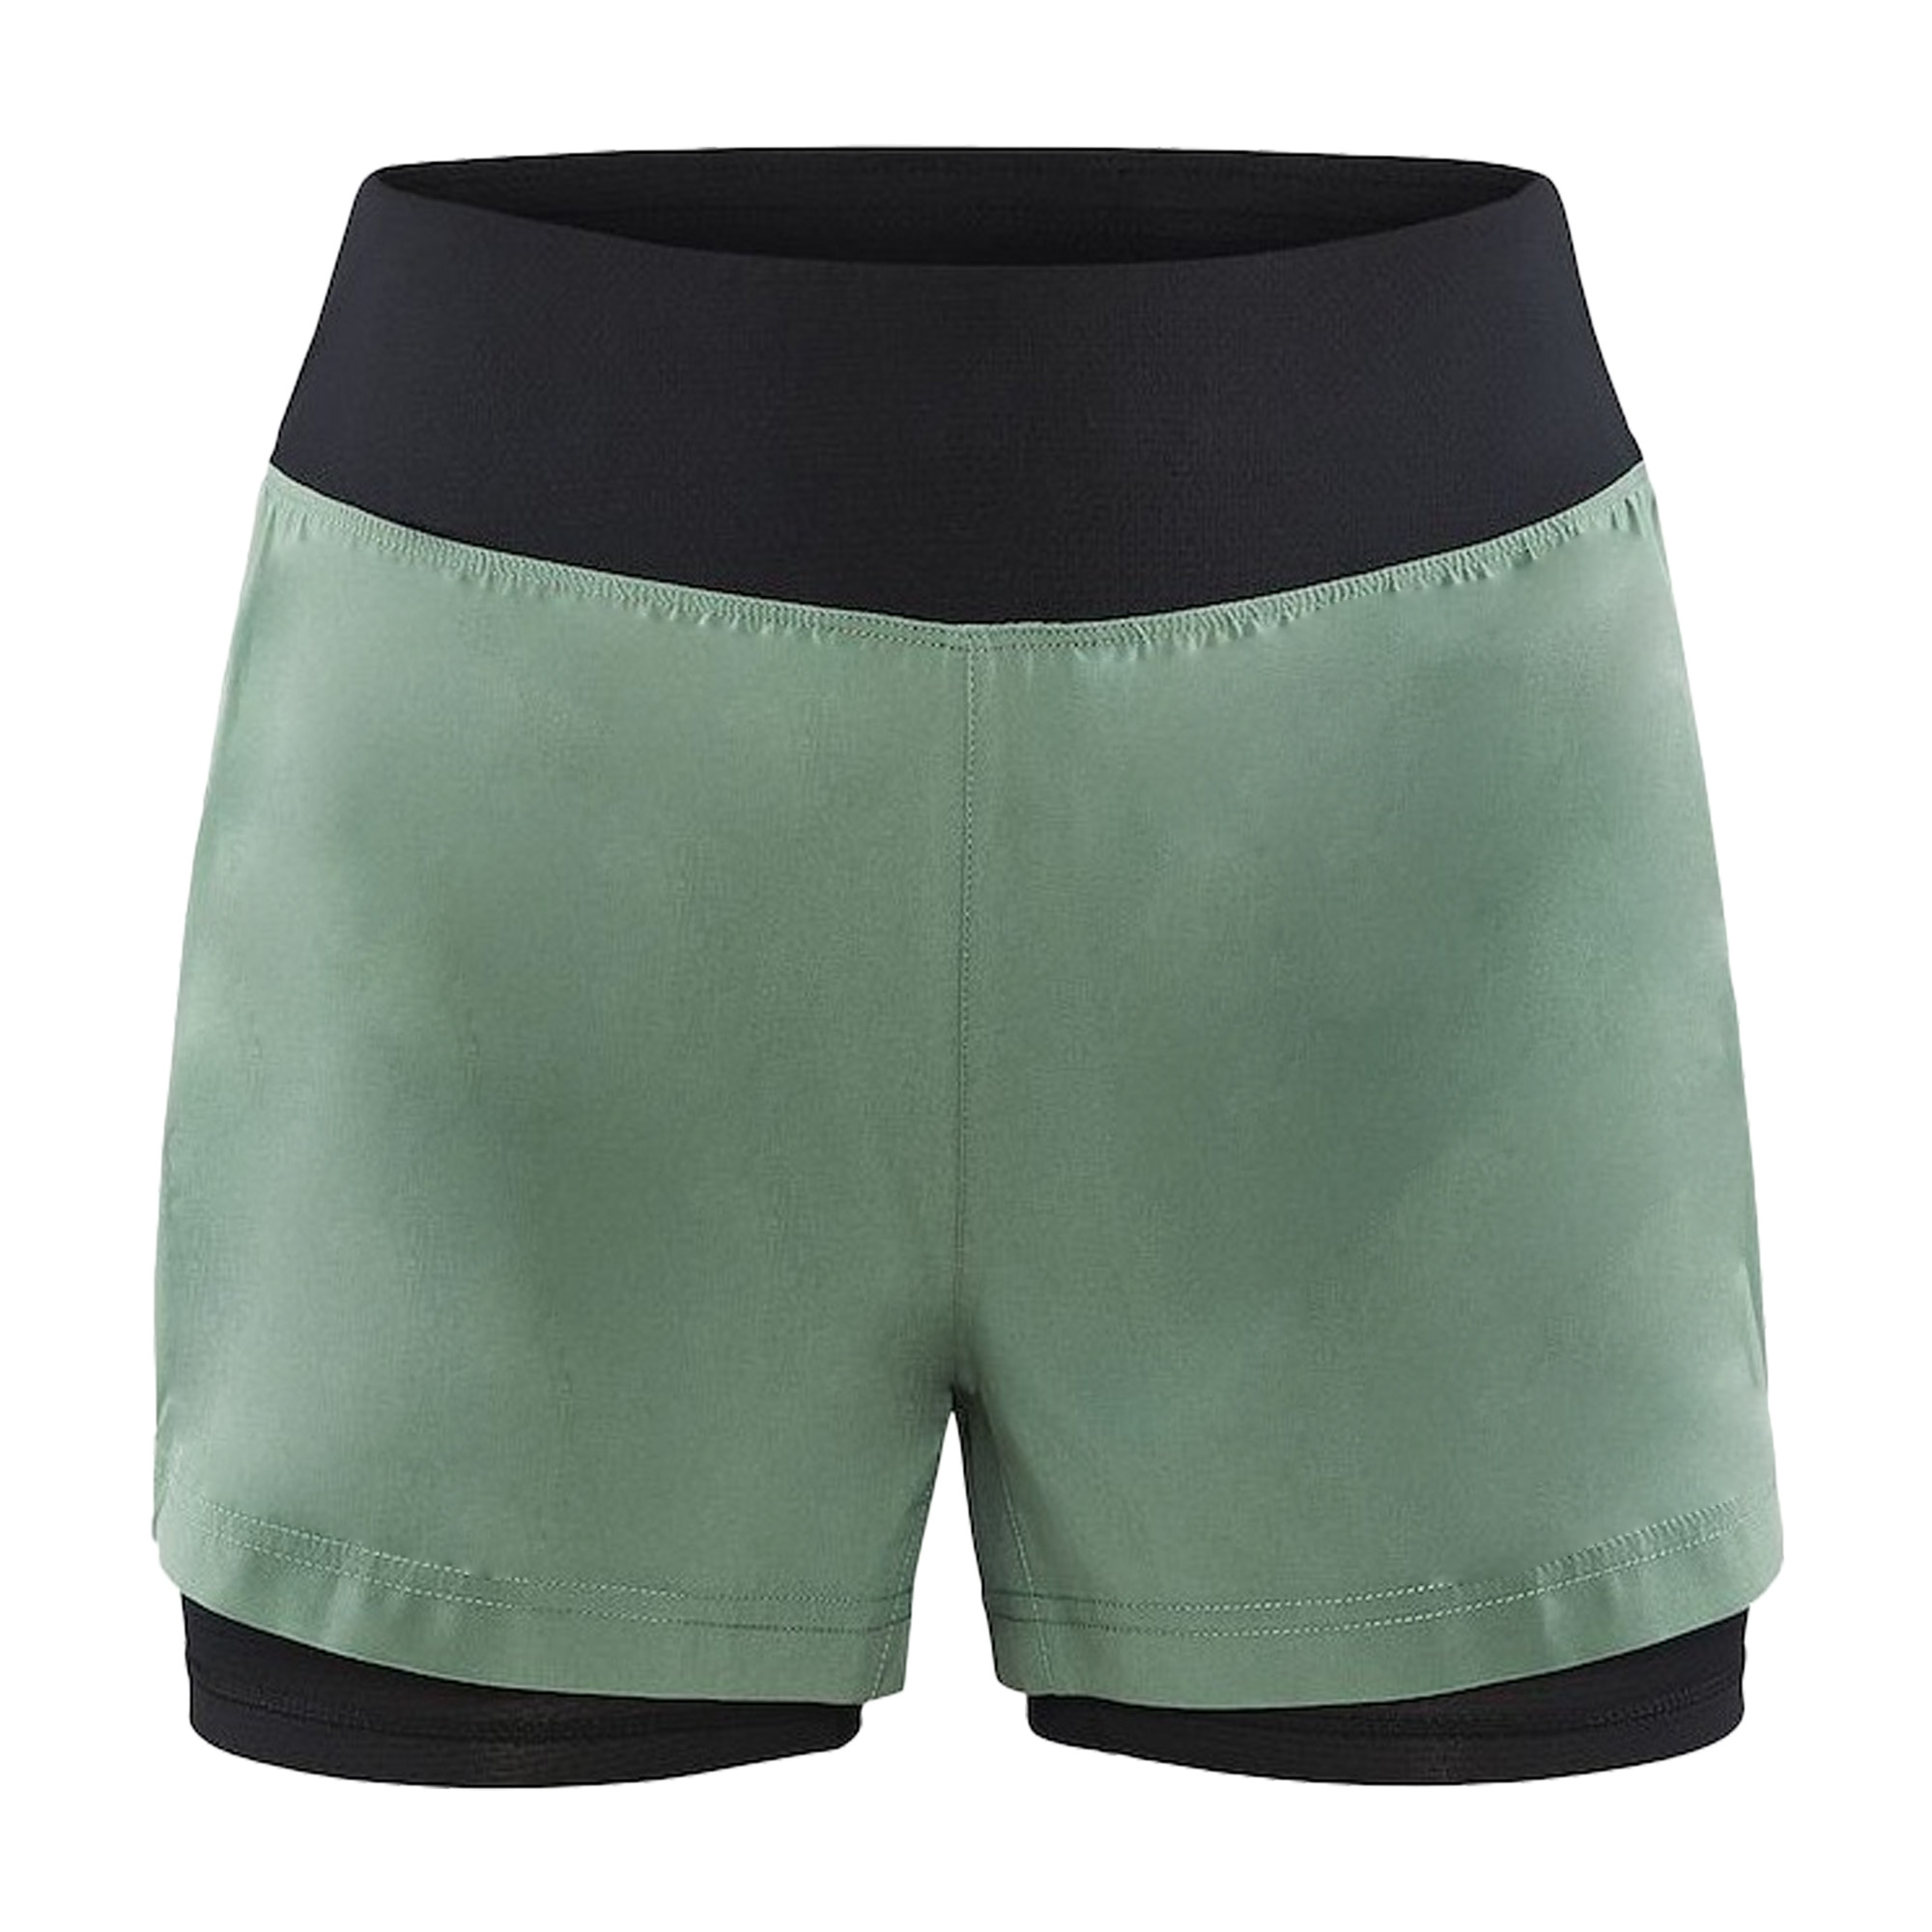 Pantalones Cortos Diseño 2 En 1 Craft Adv Essence - verde - 